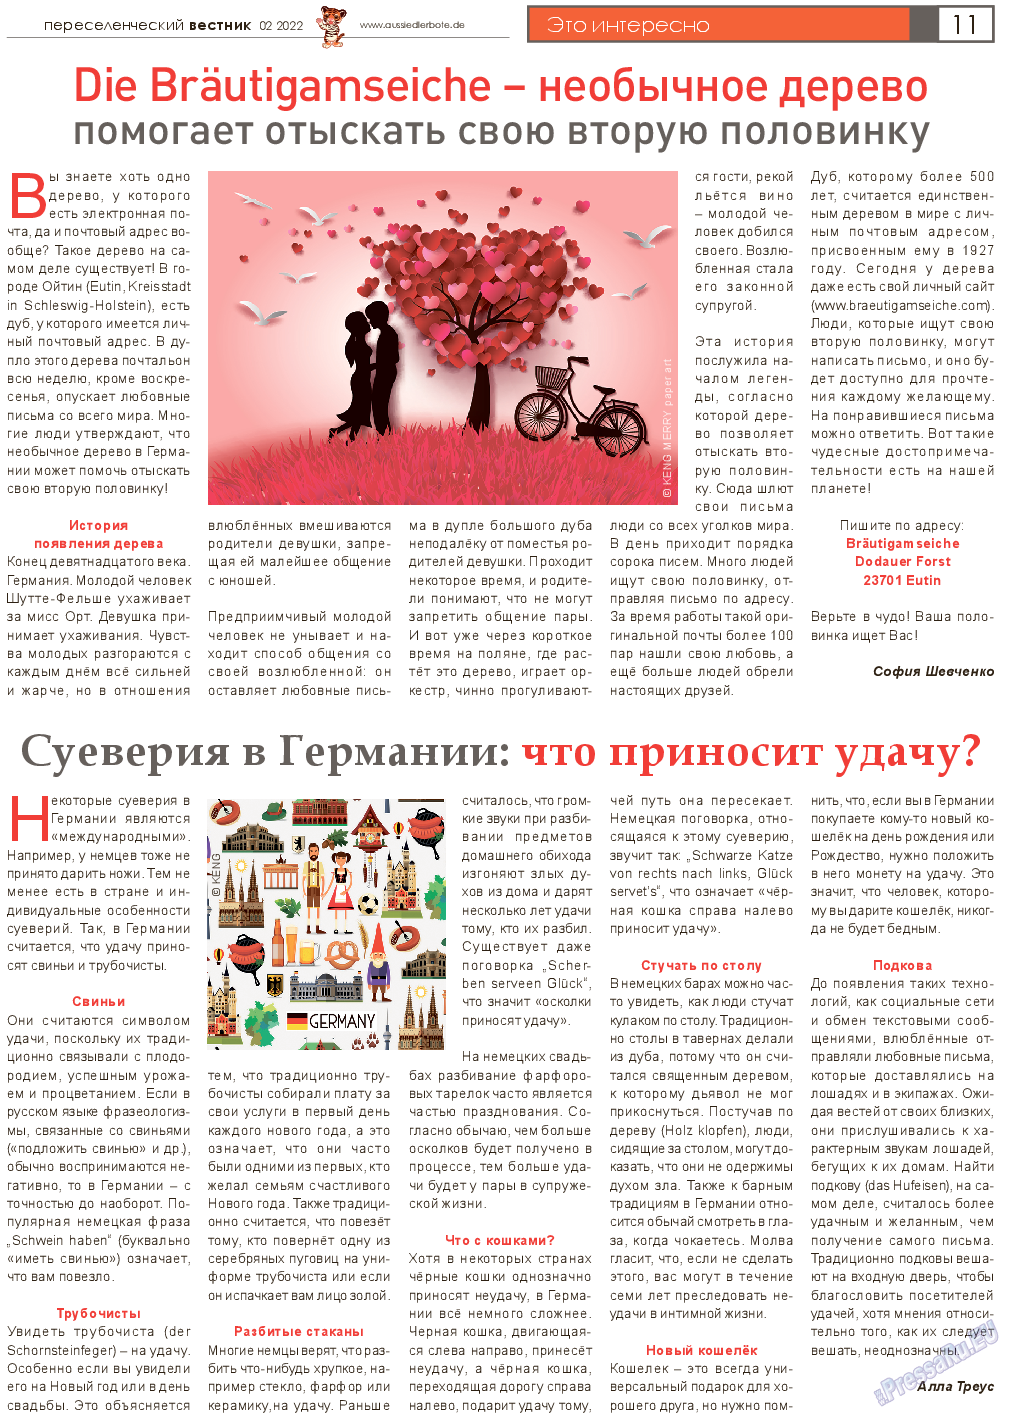 Переселенческий вестник, газета. 2022 №2 стр.11